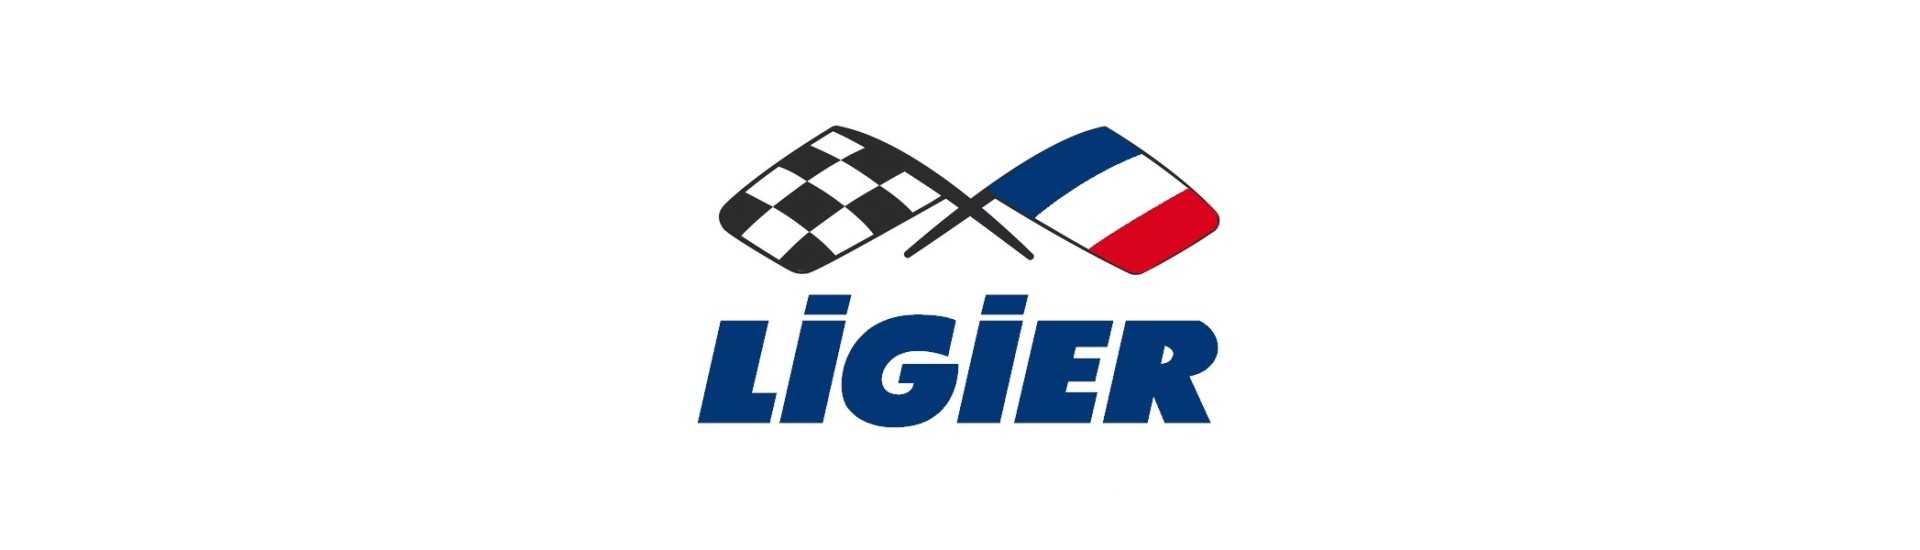 Commodo al miglior prezzo per auto senza permesso Ligier